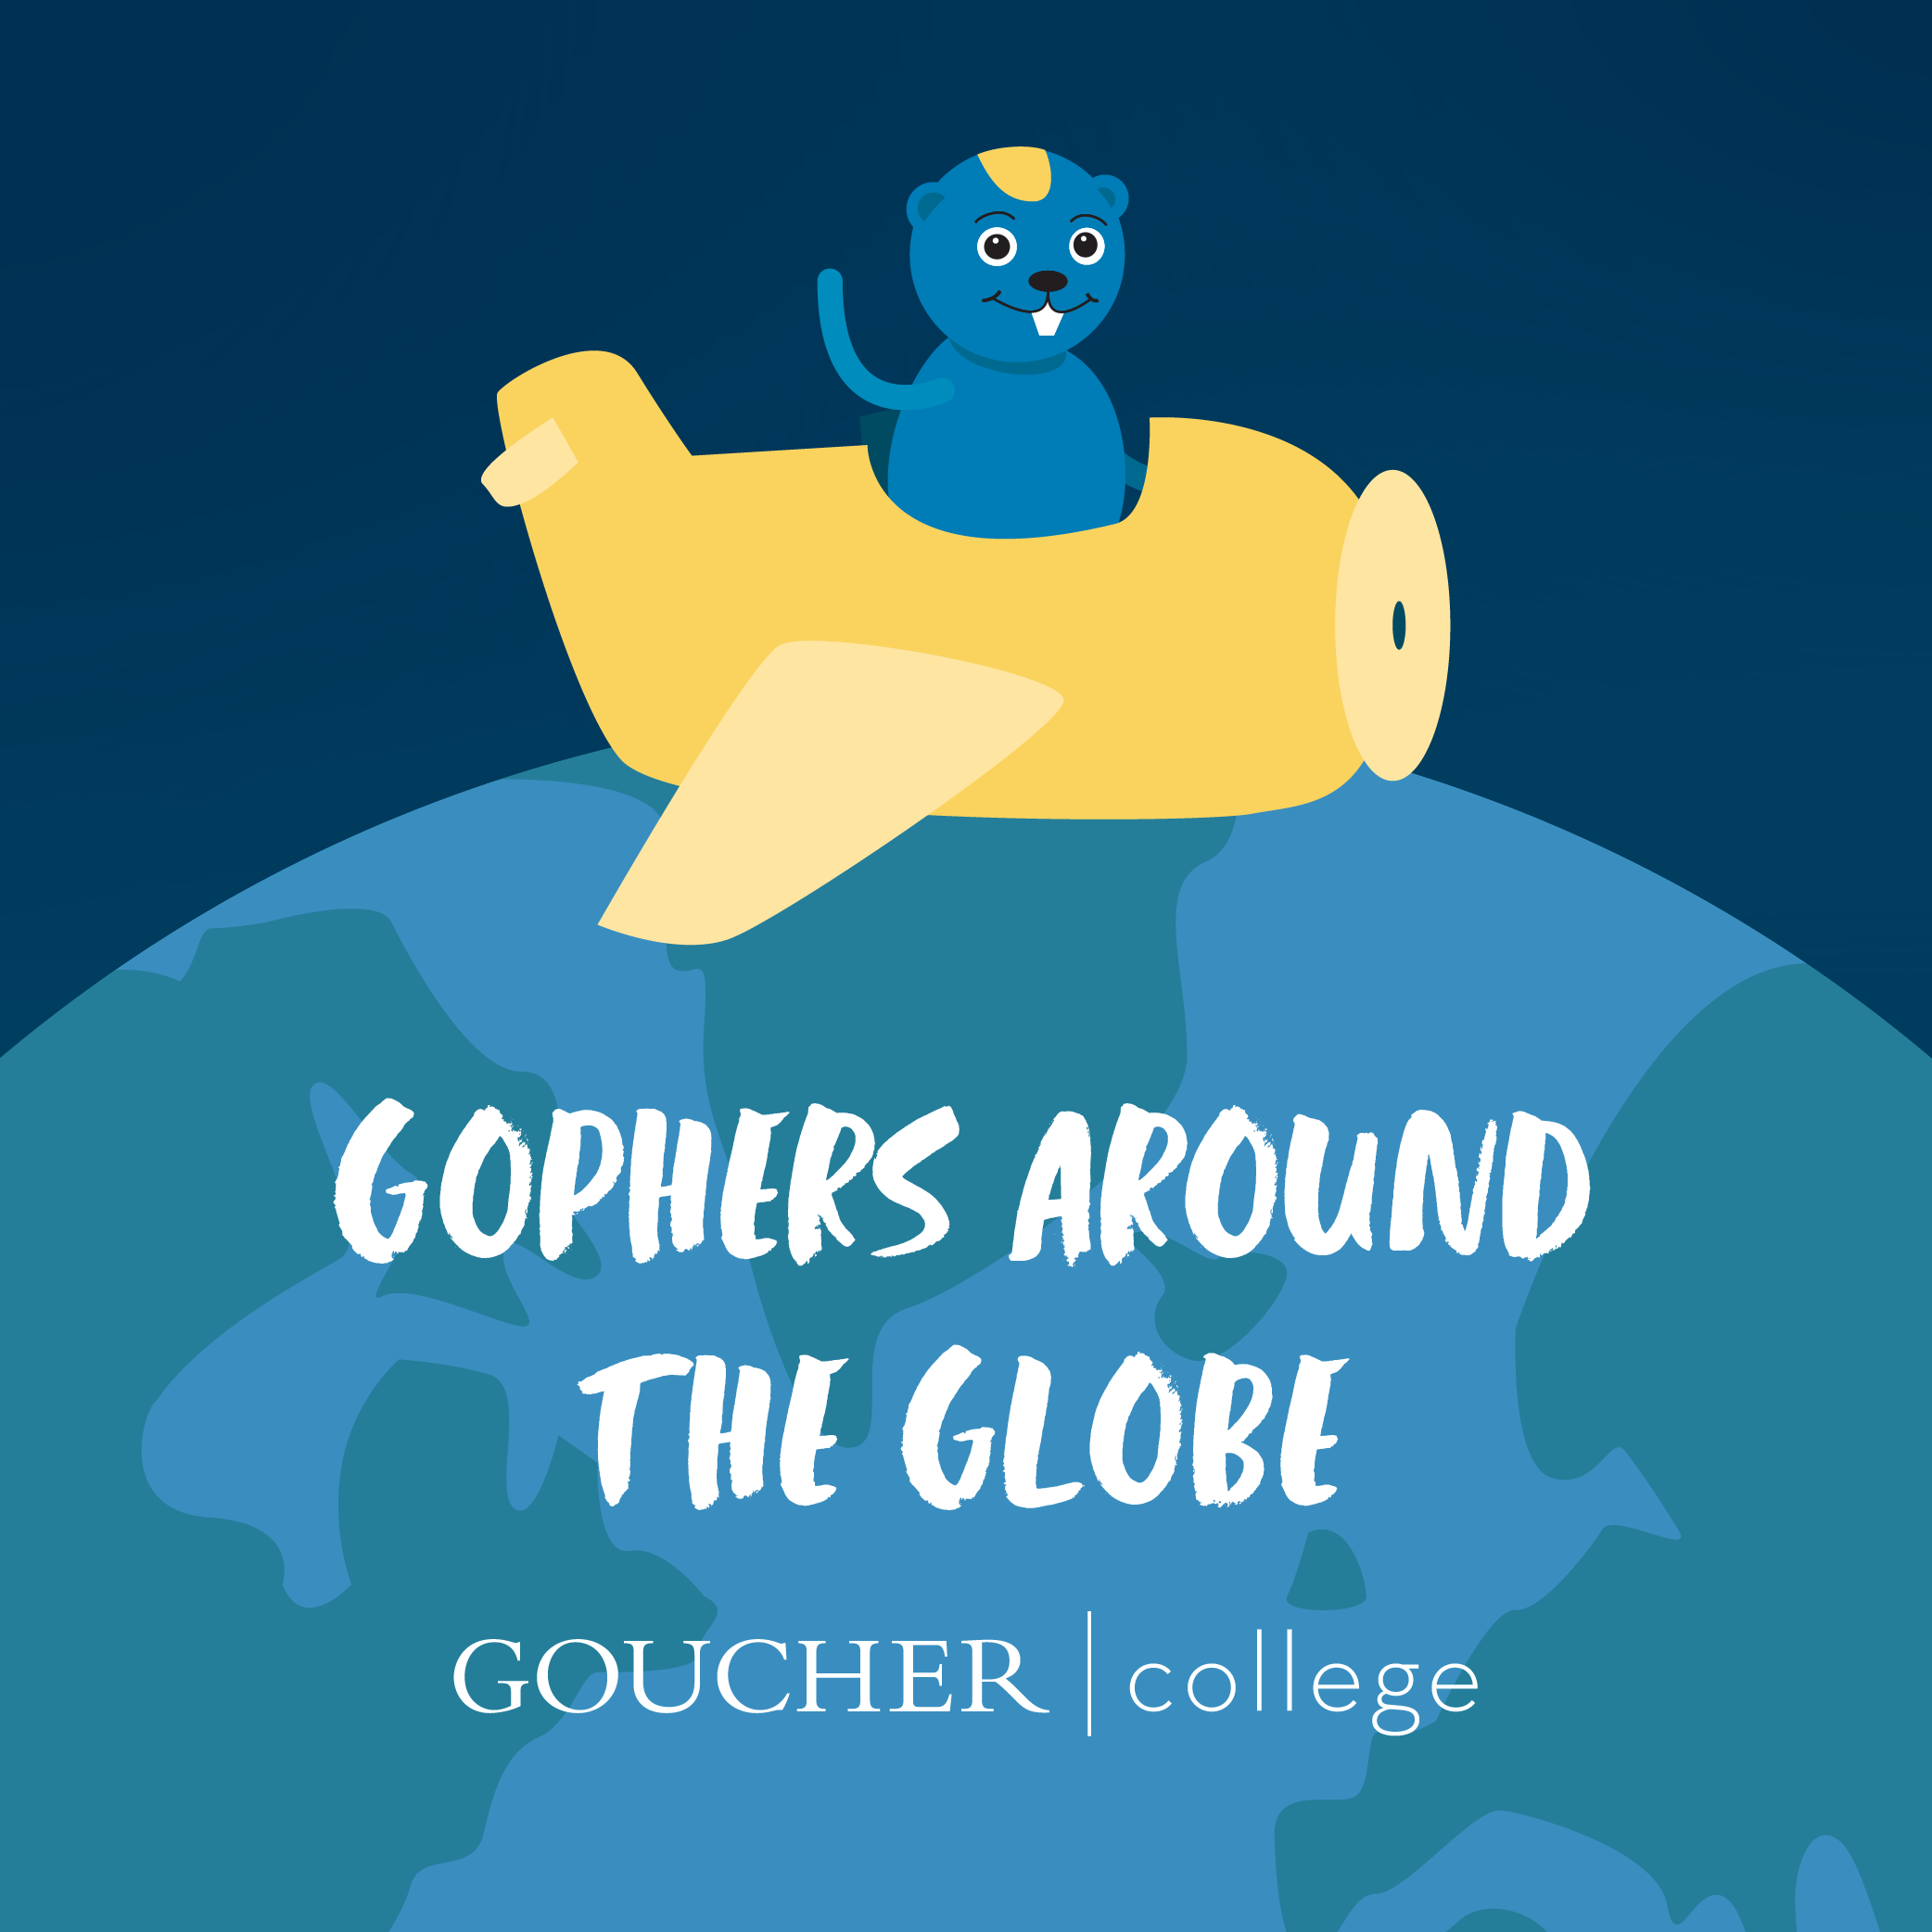 Gophers Around The Globe